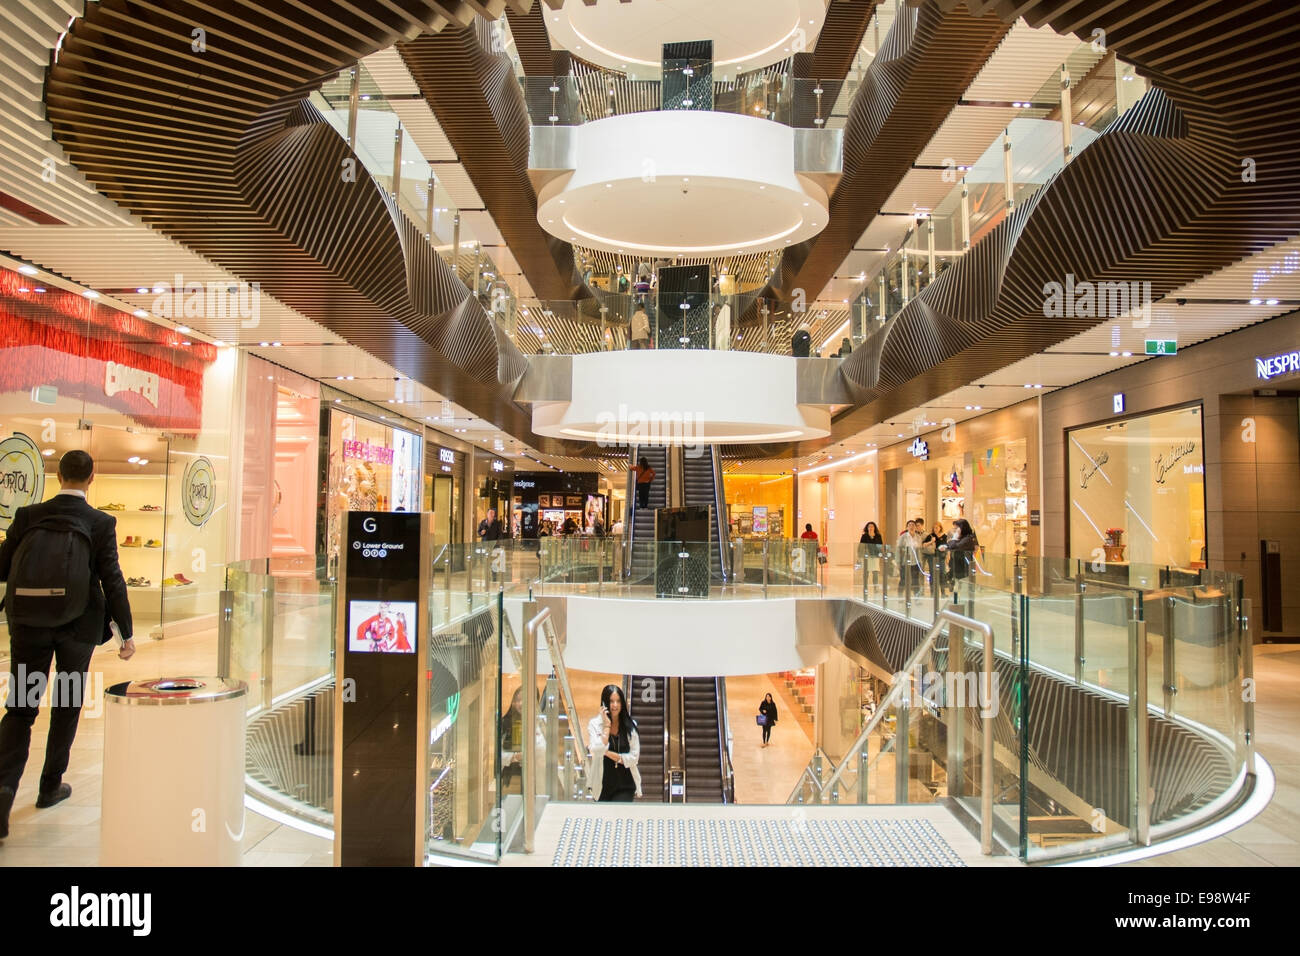 The Emporium Shopping Mall Melbourne Australia Stock Photo: 74568719 - Alamy